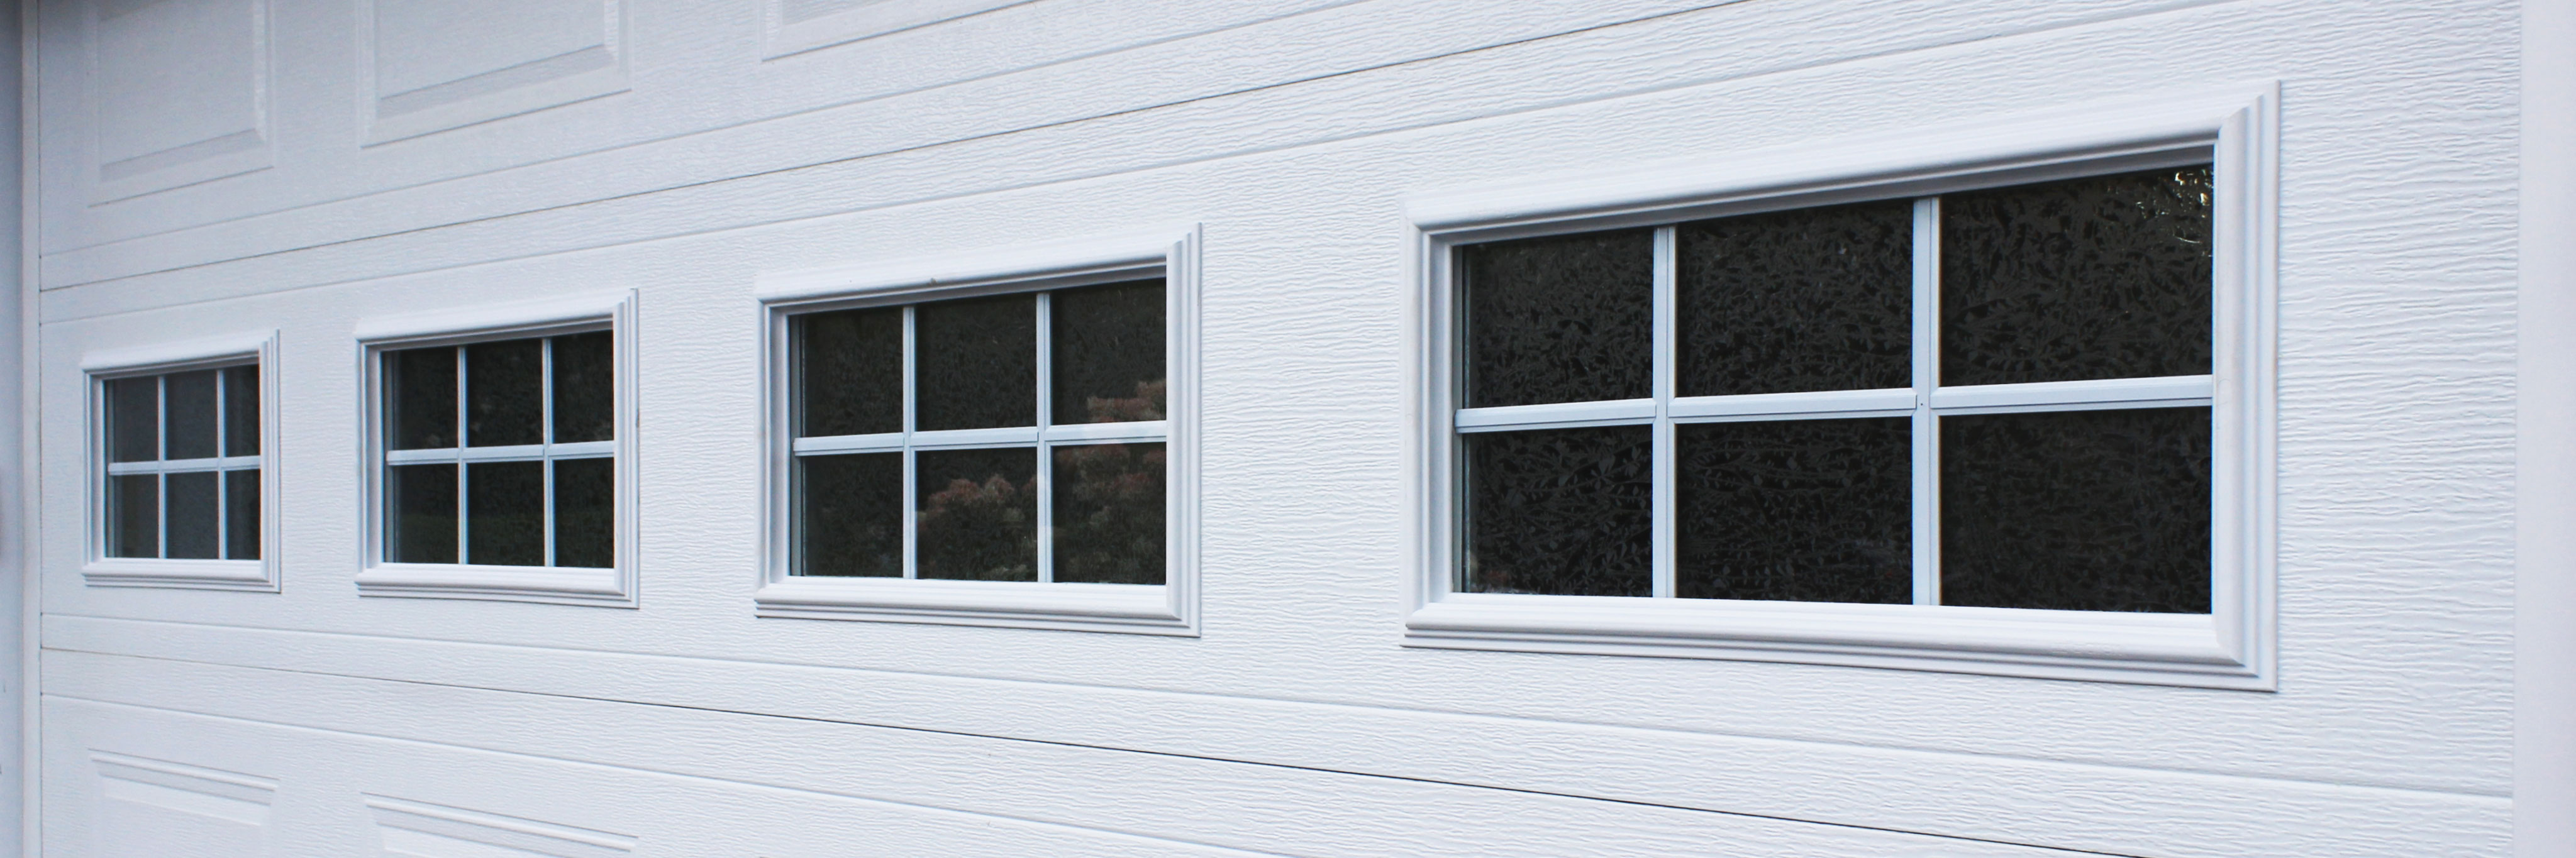 Thermal Windows To Your Garage Door, Garage Door Glass Panel Replacement